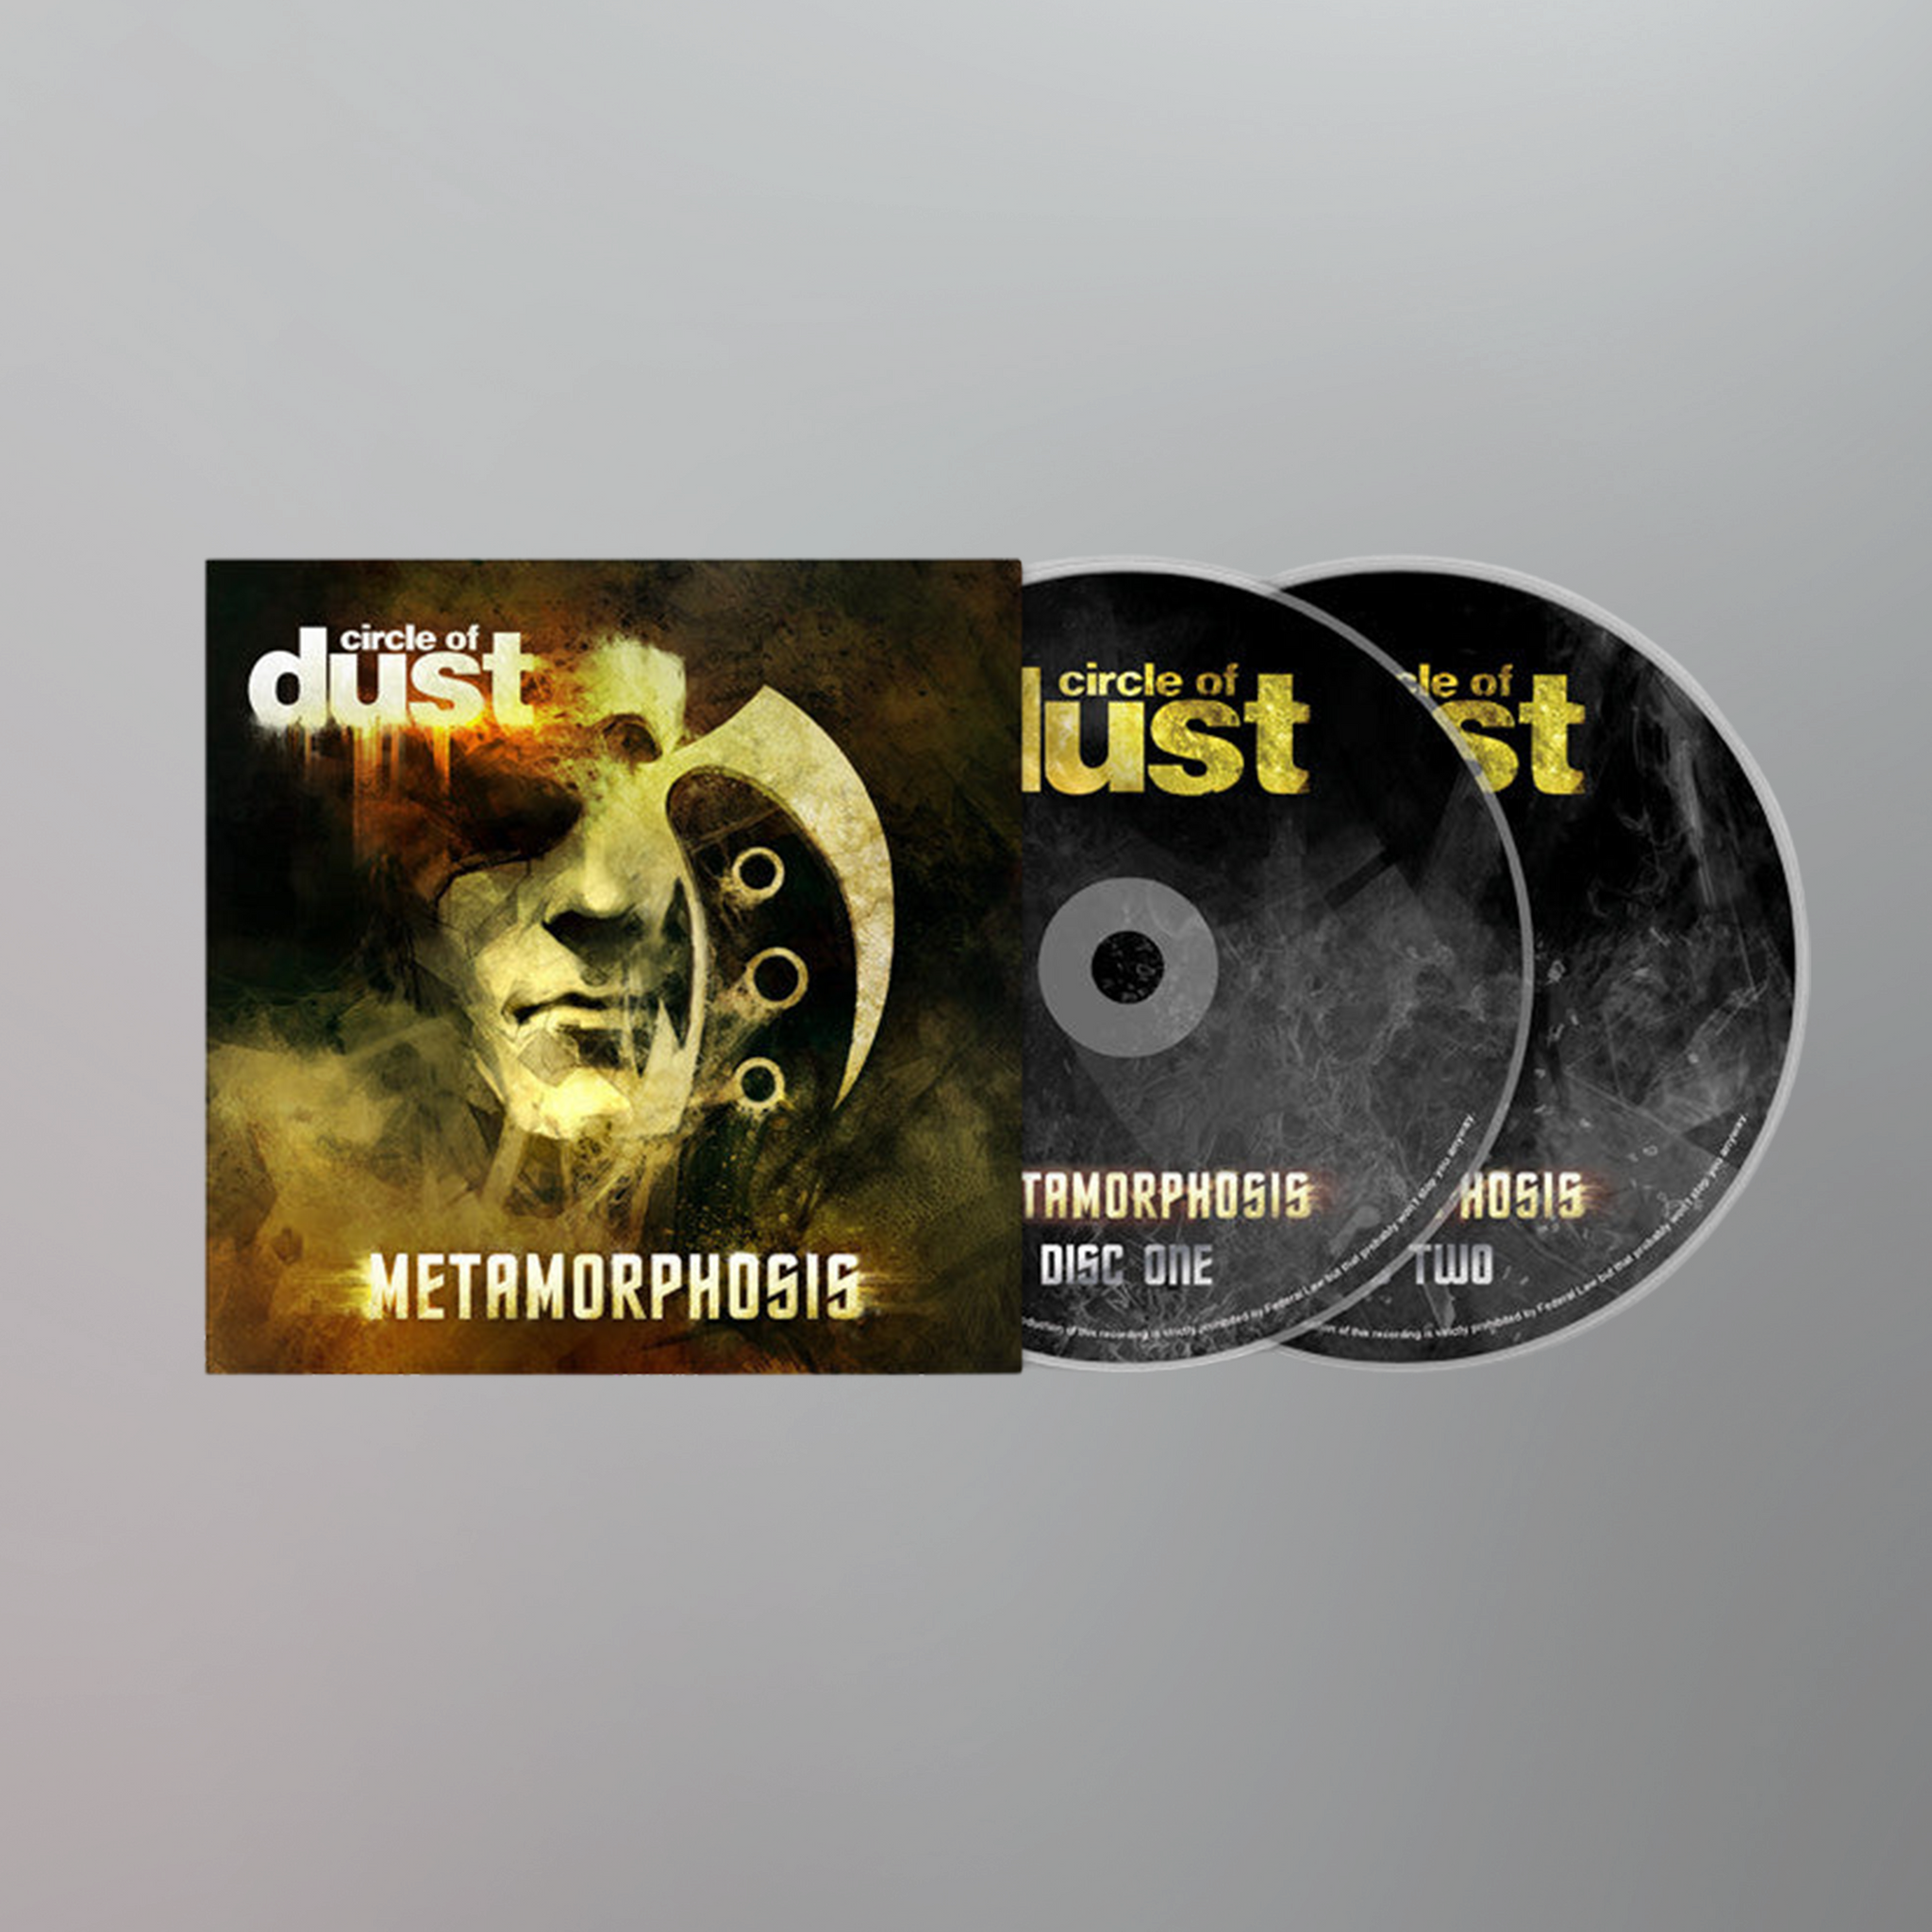 Circle of Dust - Metamorphosis (Remastered) CD